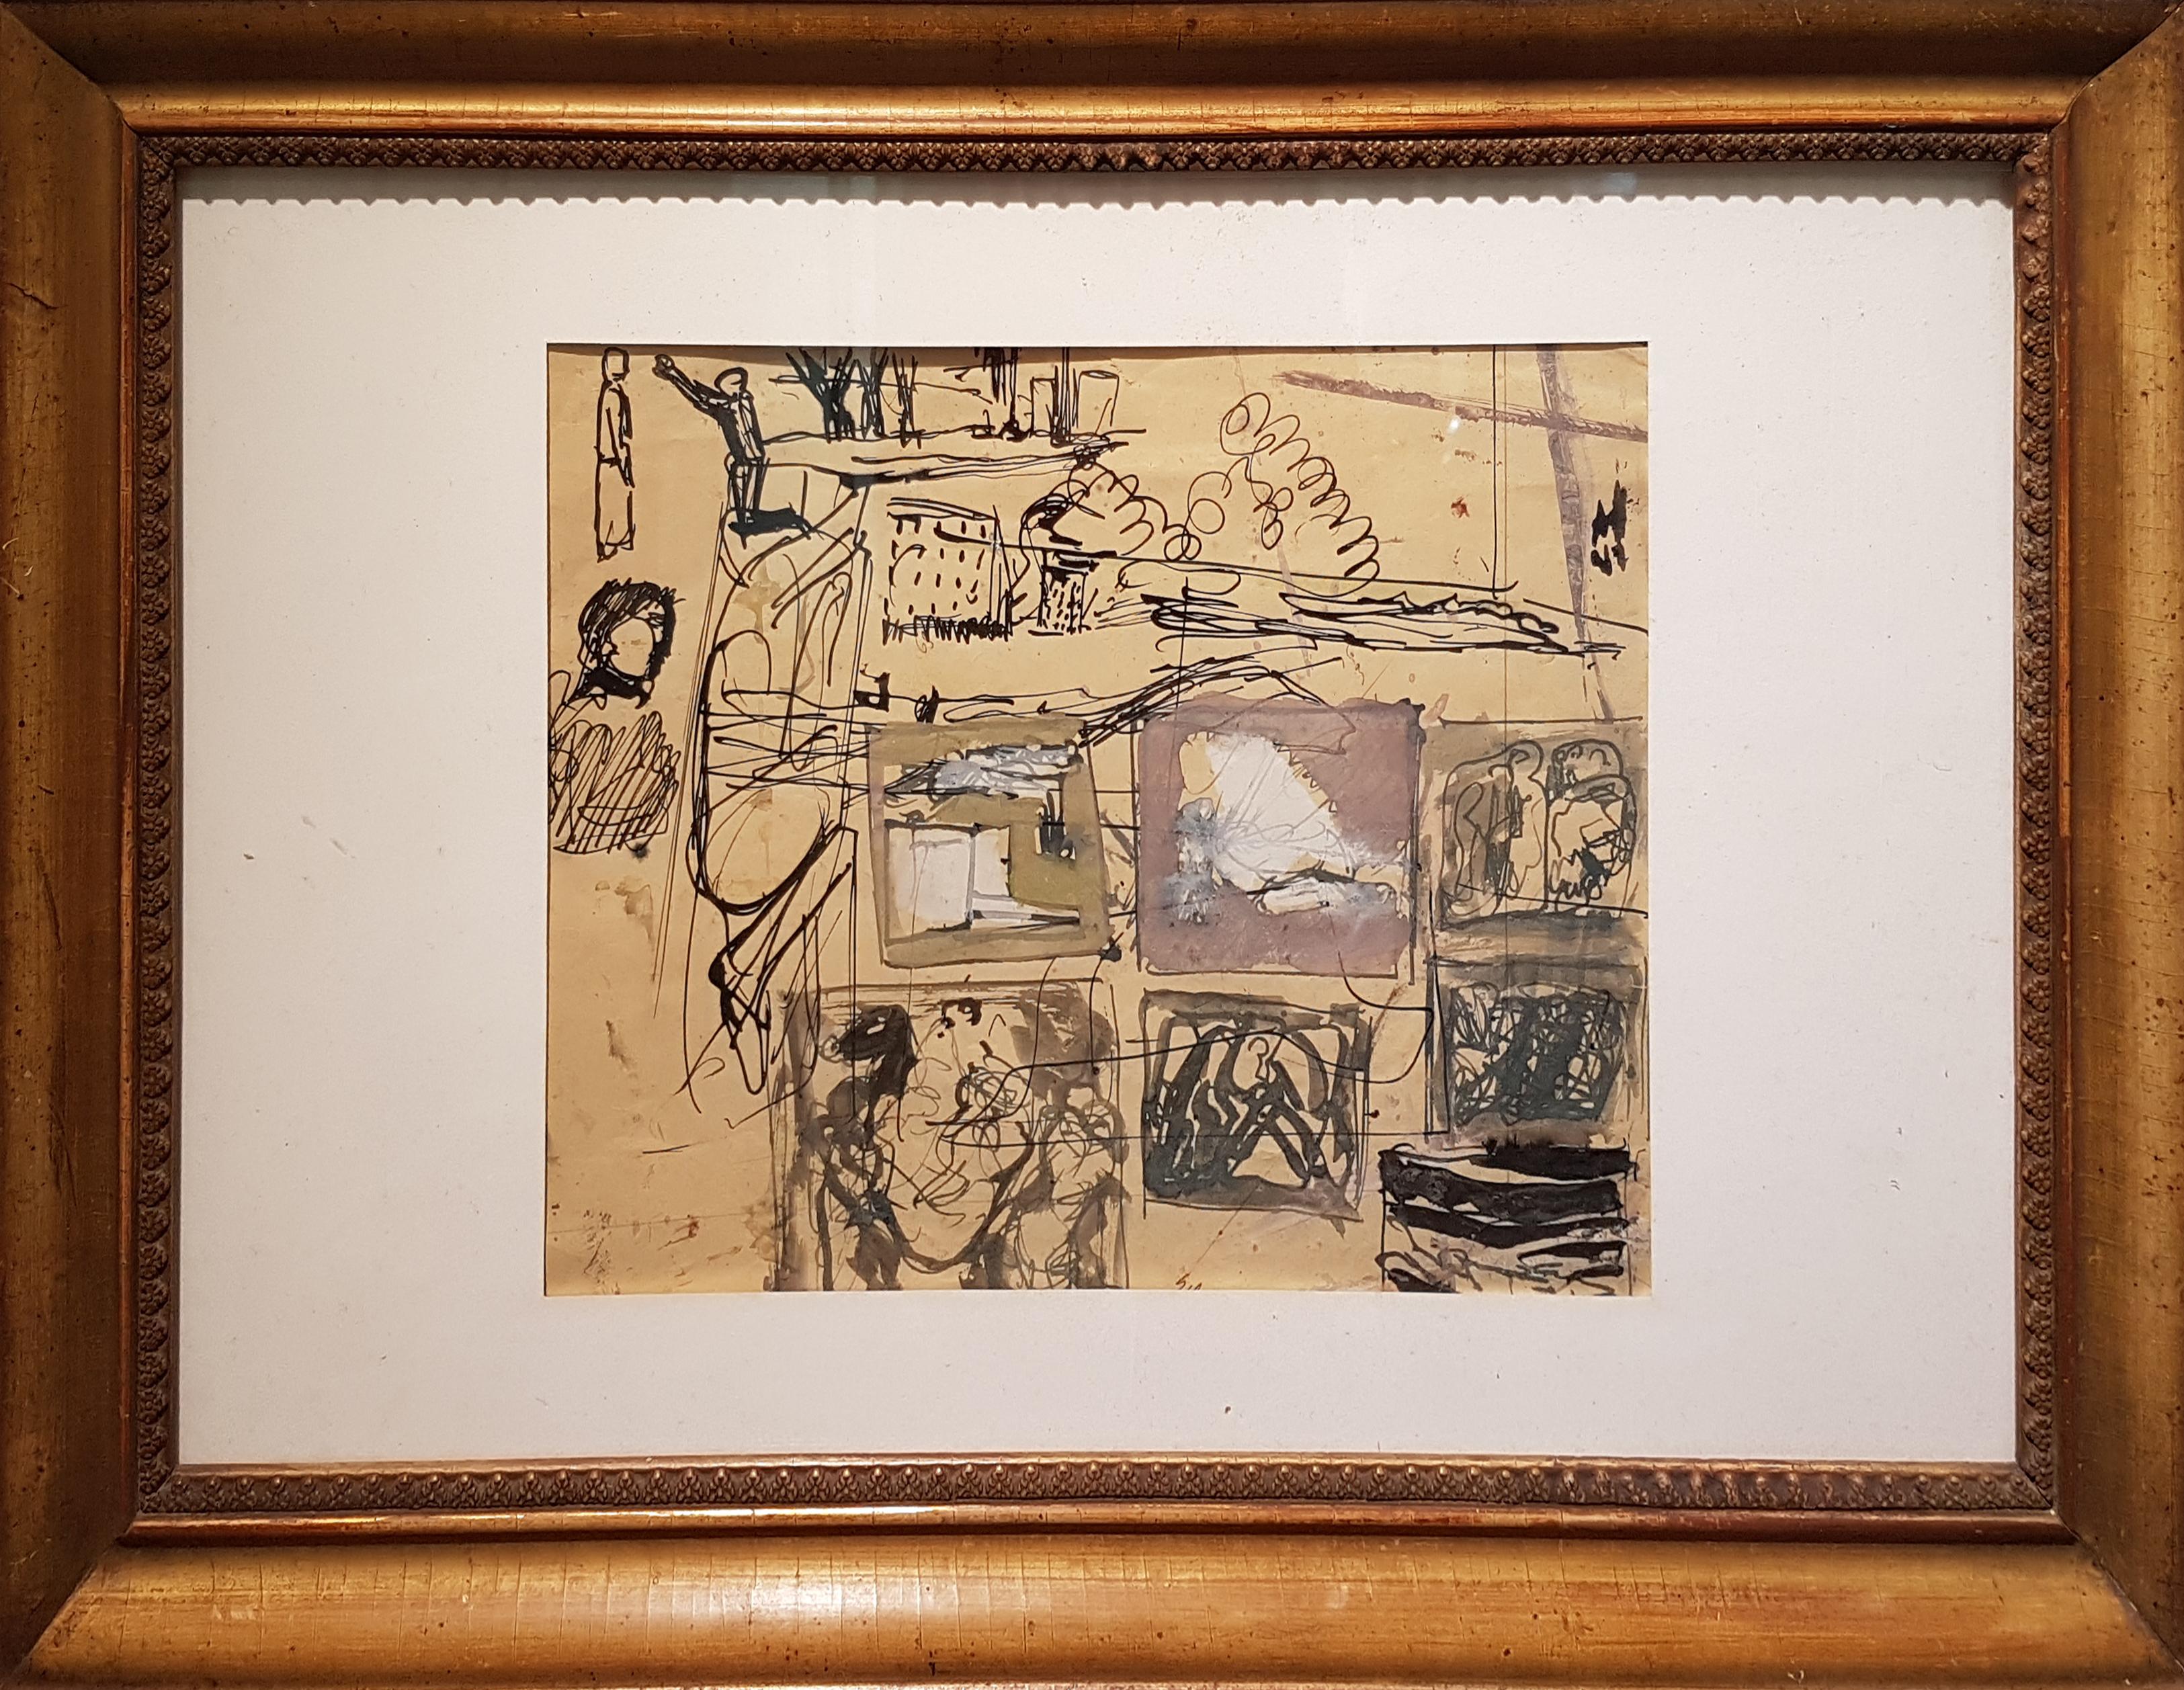 Signiert unten in der Mitte.
Gute Bedingungen.

Mario Sironi (1885-1961) 
Mario Sironi war ein italienischer Maler, Bildhauer, Illustrator und Designer der Moderne. Er wurde in Sassari geboren, sein Großvater war der Architekt und Bildhauer Ignazio